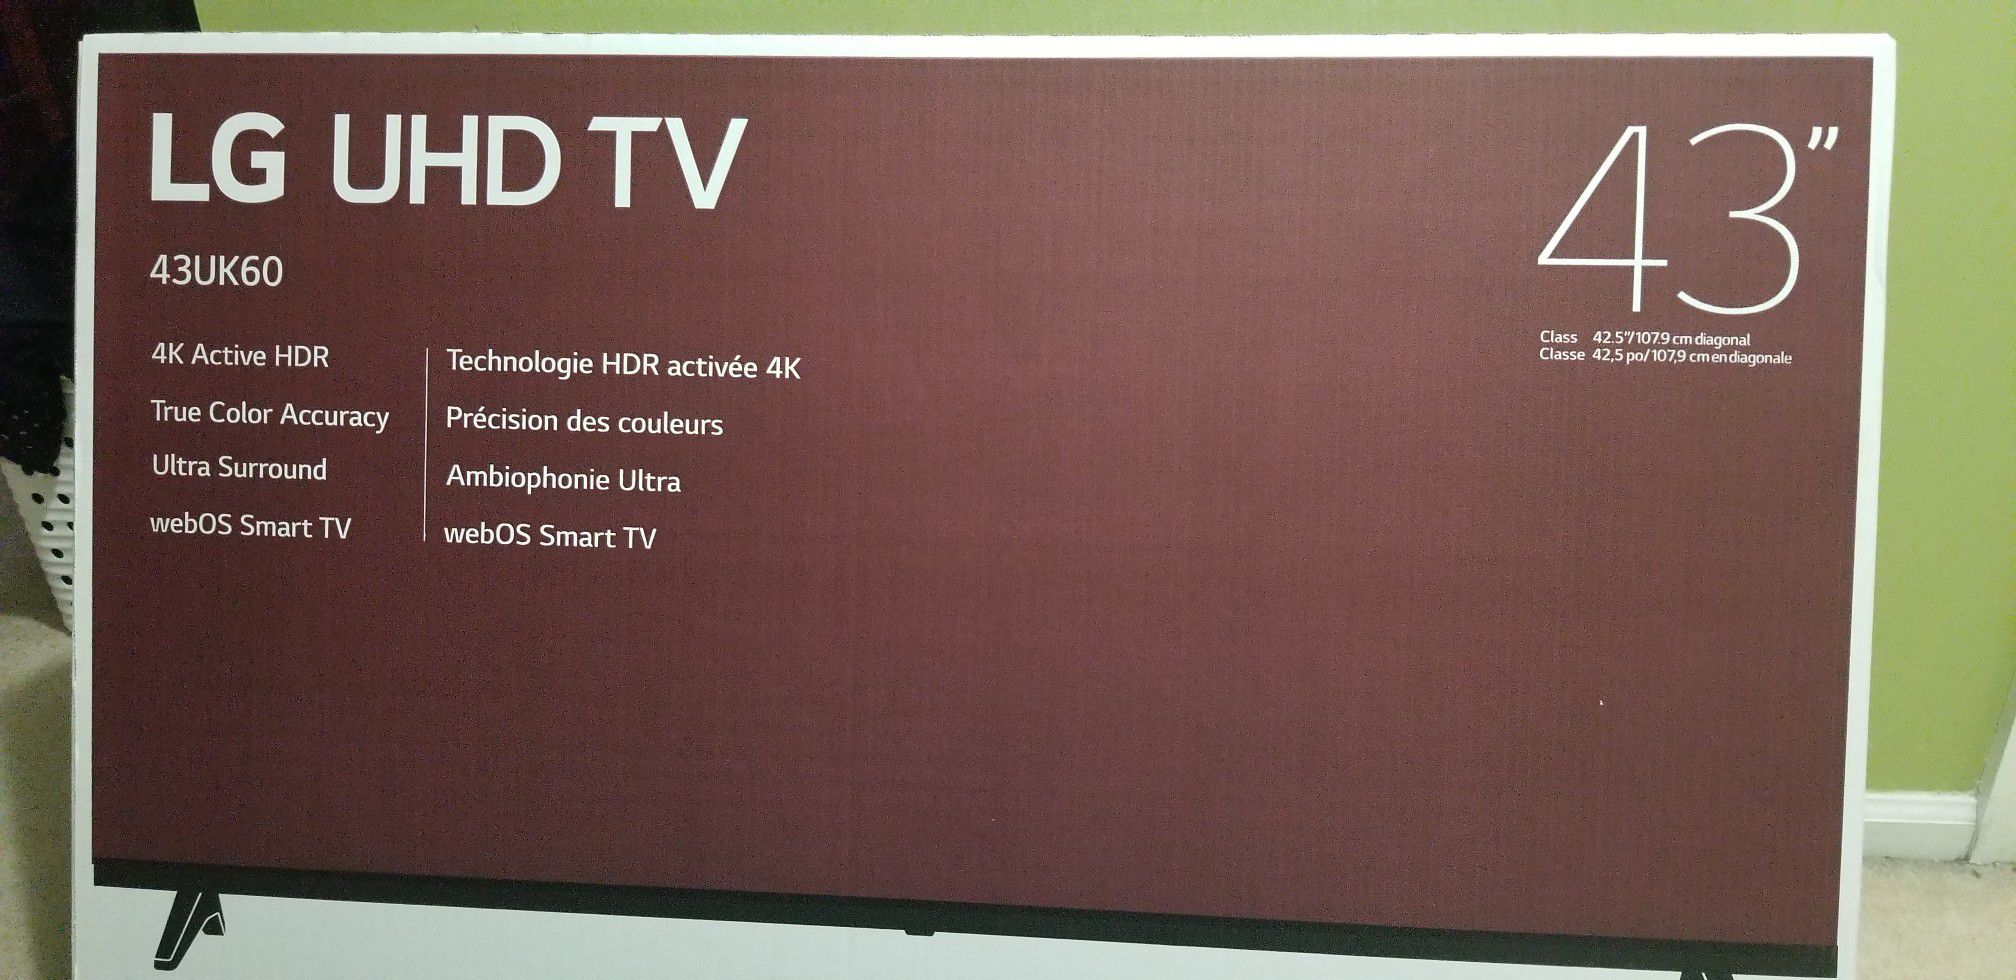 LG UHD TV 43"